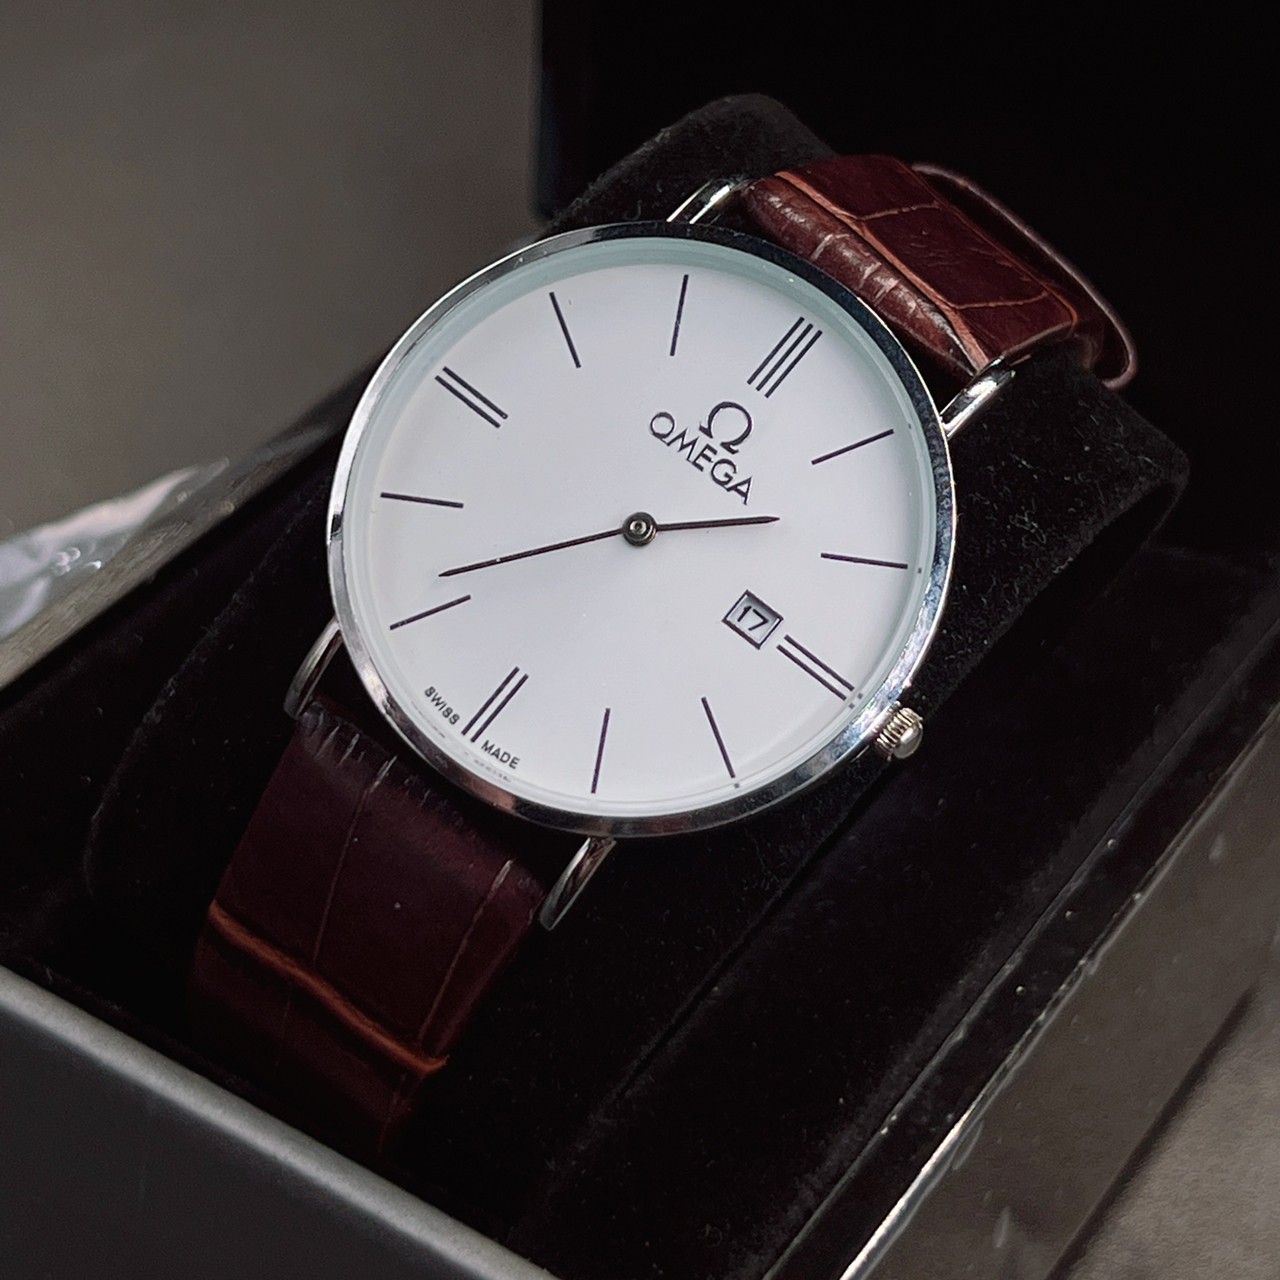 Watchtime นาฬิกายี่ห้อหรู โอเมก้า สายหนัง มีวันที่ แถมกล่องหนังแบบหรู  สีสายนาฬิกา 1